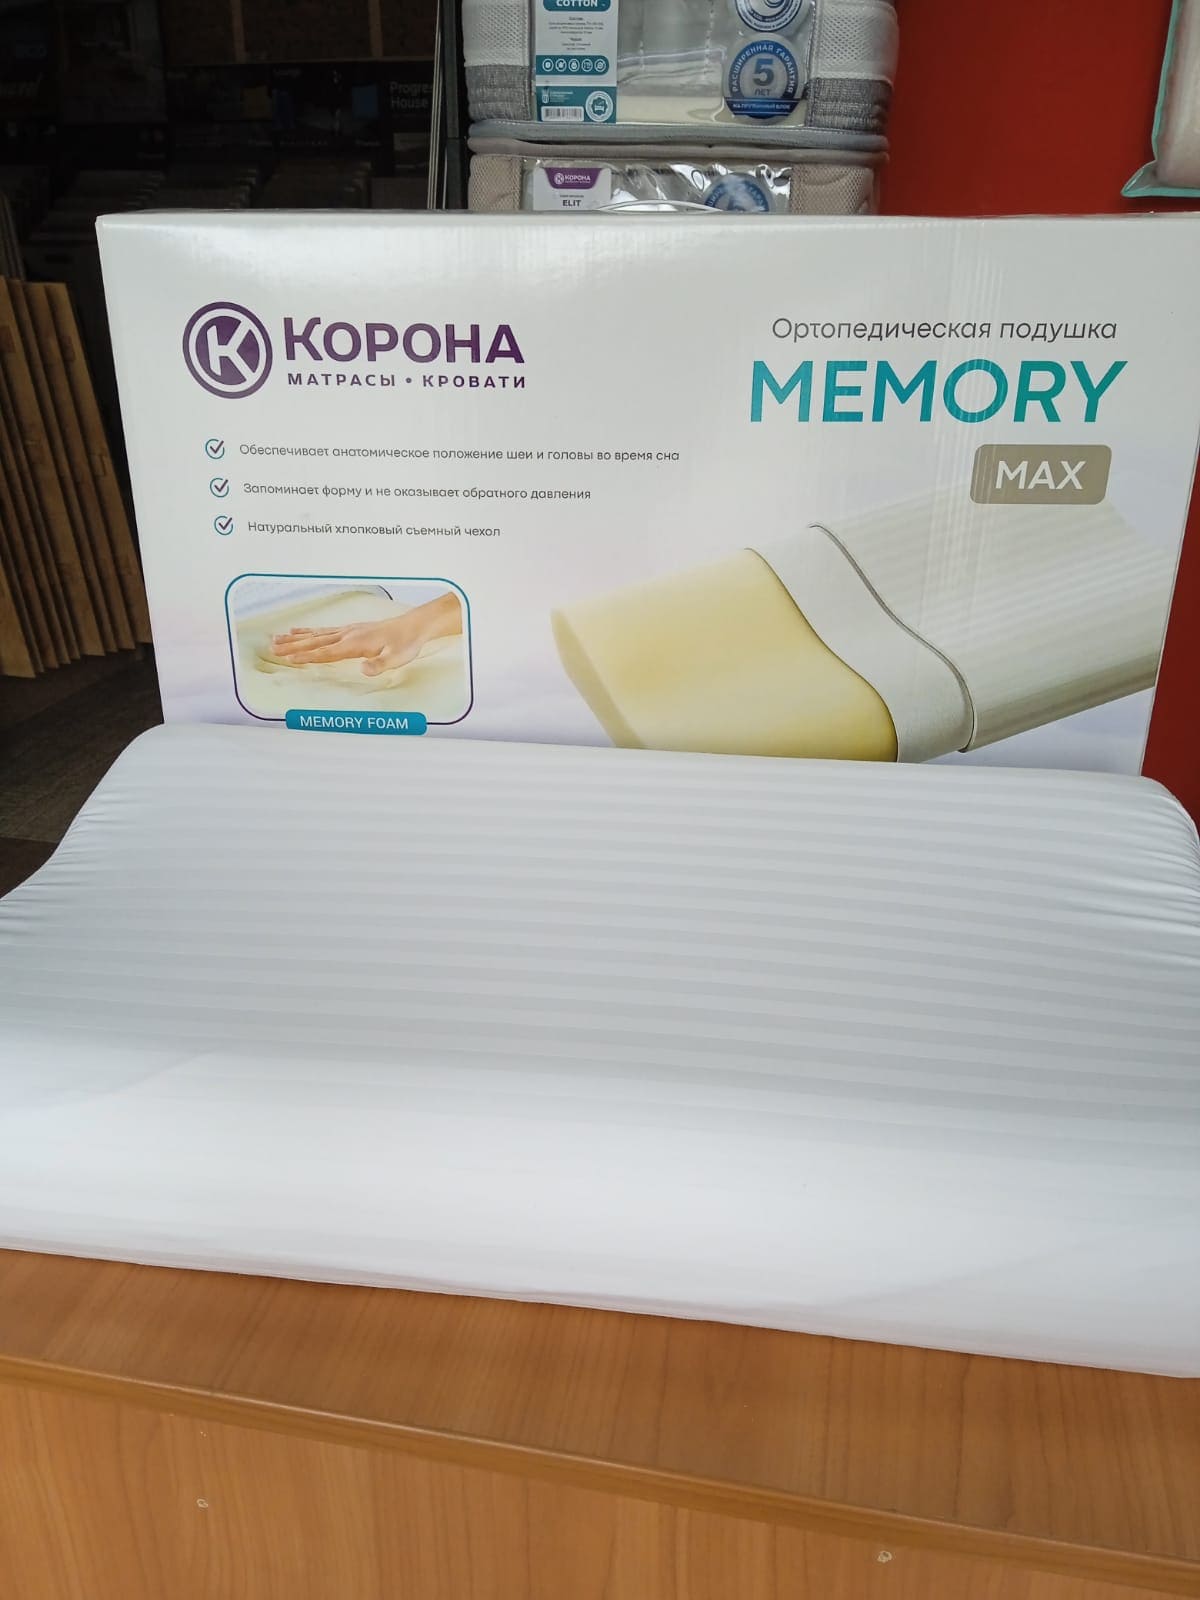 Анатомическая подушка «Memory Max» в коробке